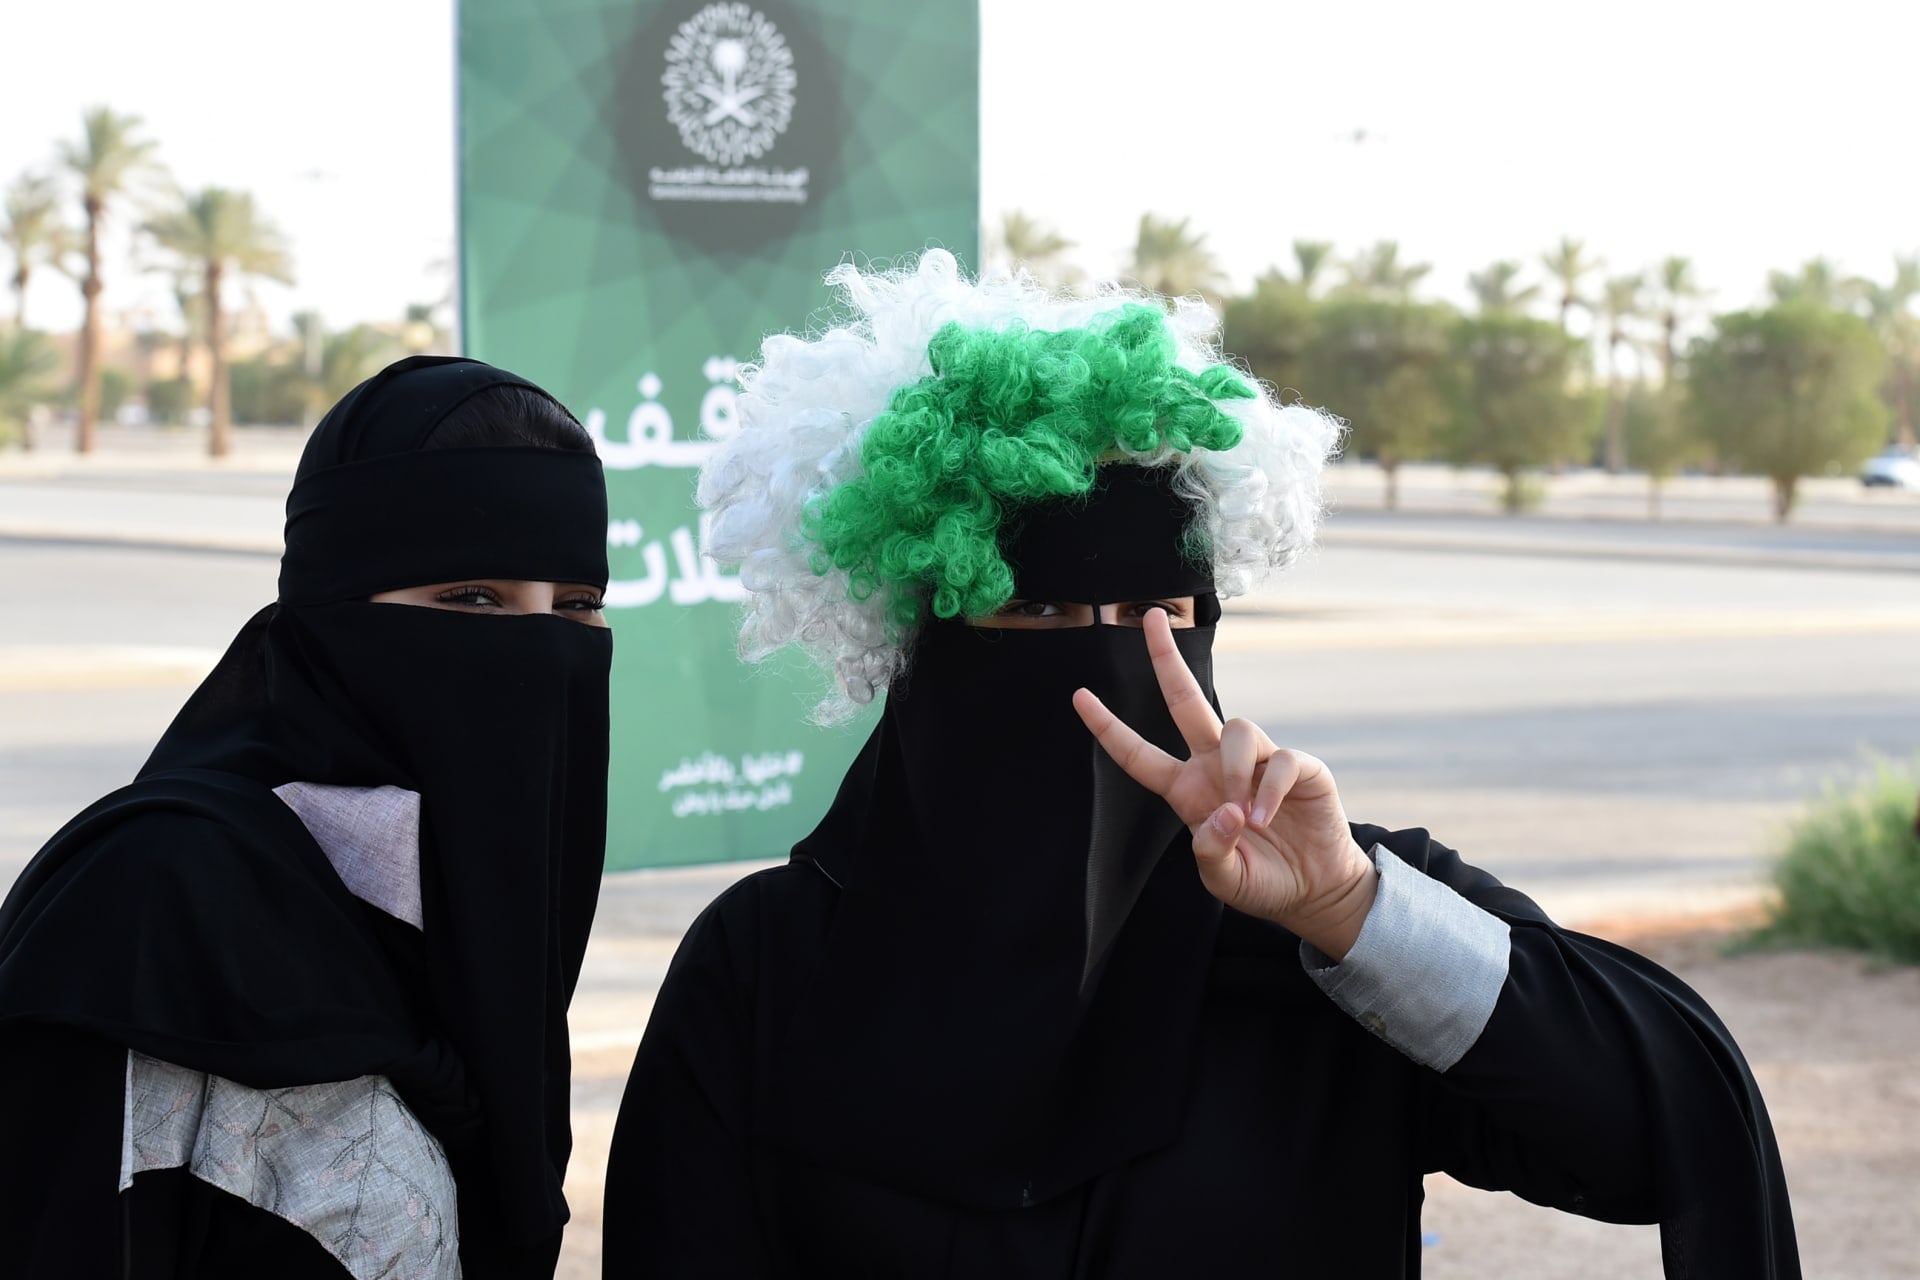 السعودية.. تحذير من ارتكاب جريمة التحرش قبل أيام قليلة من اليوم الوطني